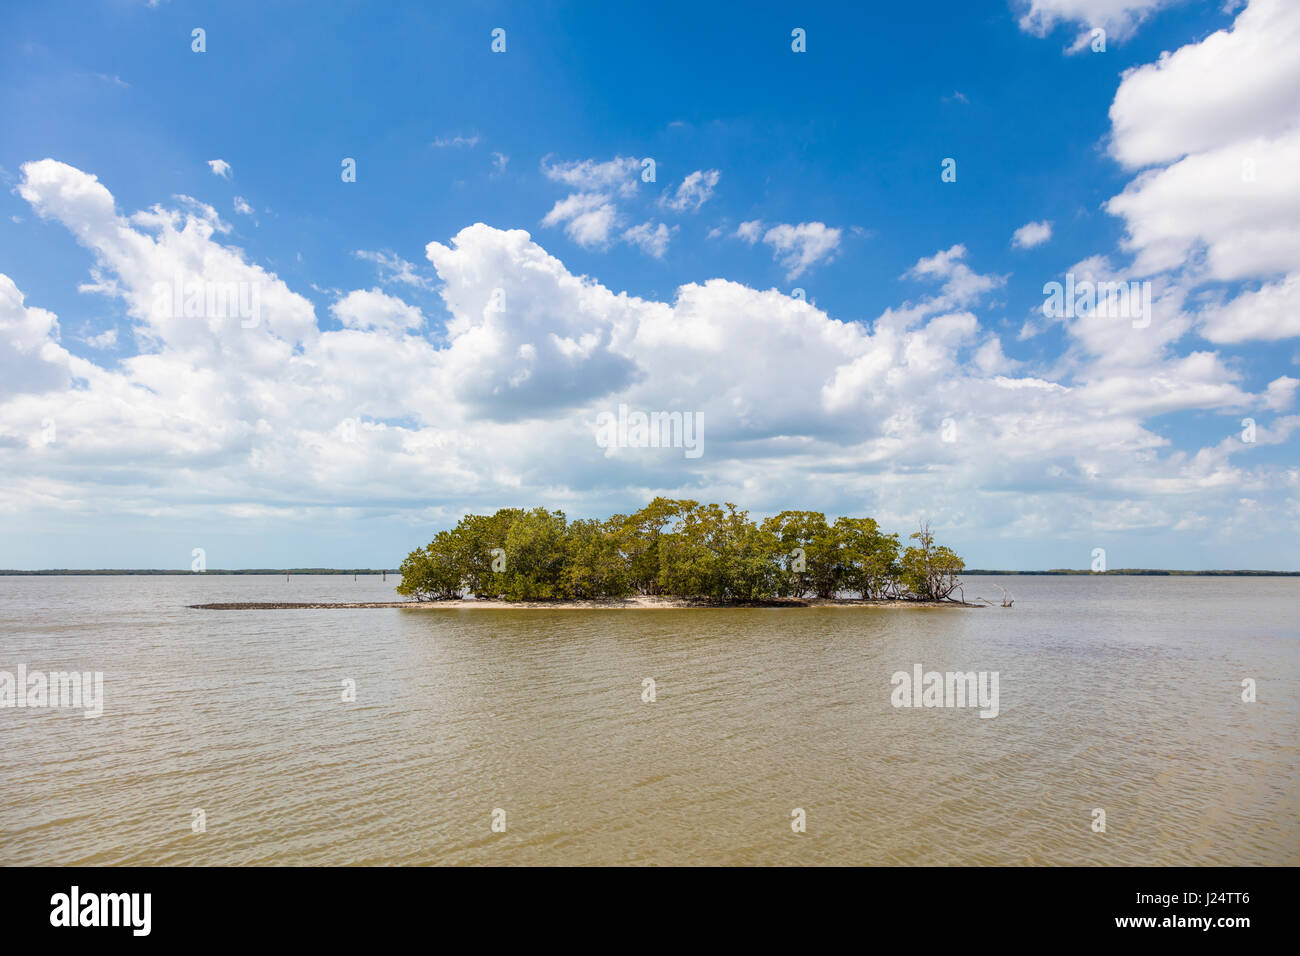 Petite île dans la région des Mille-Îles Parc national des Everglades en Floride Banque D'Images